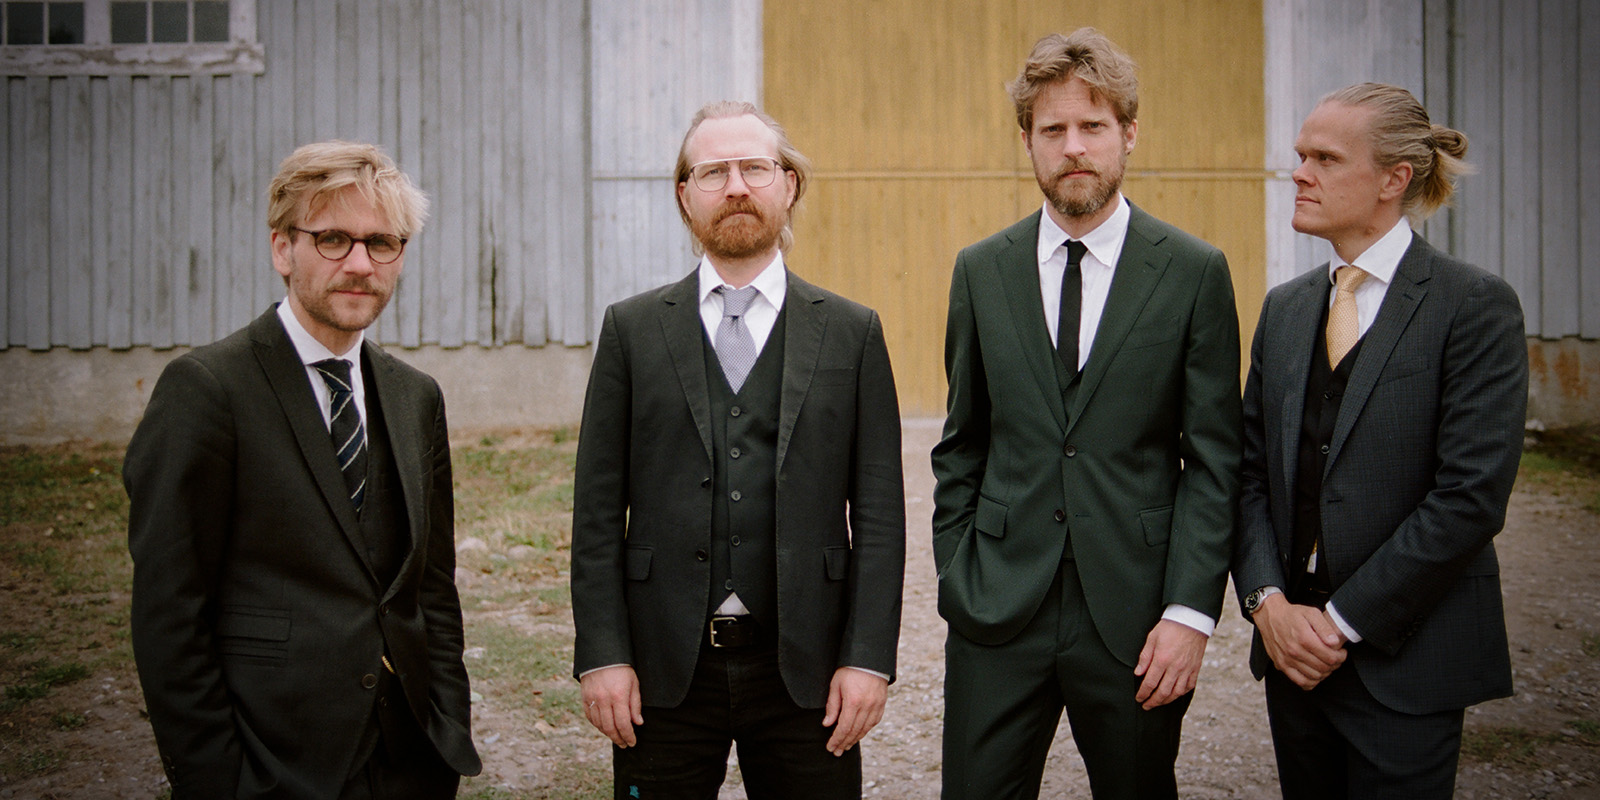 Four men in dark suits standing outdoors.